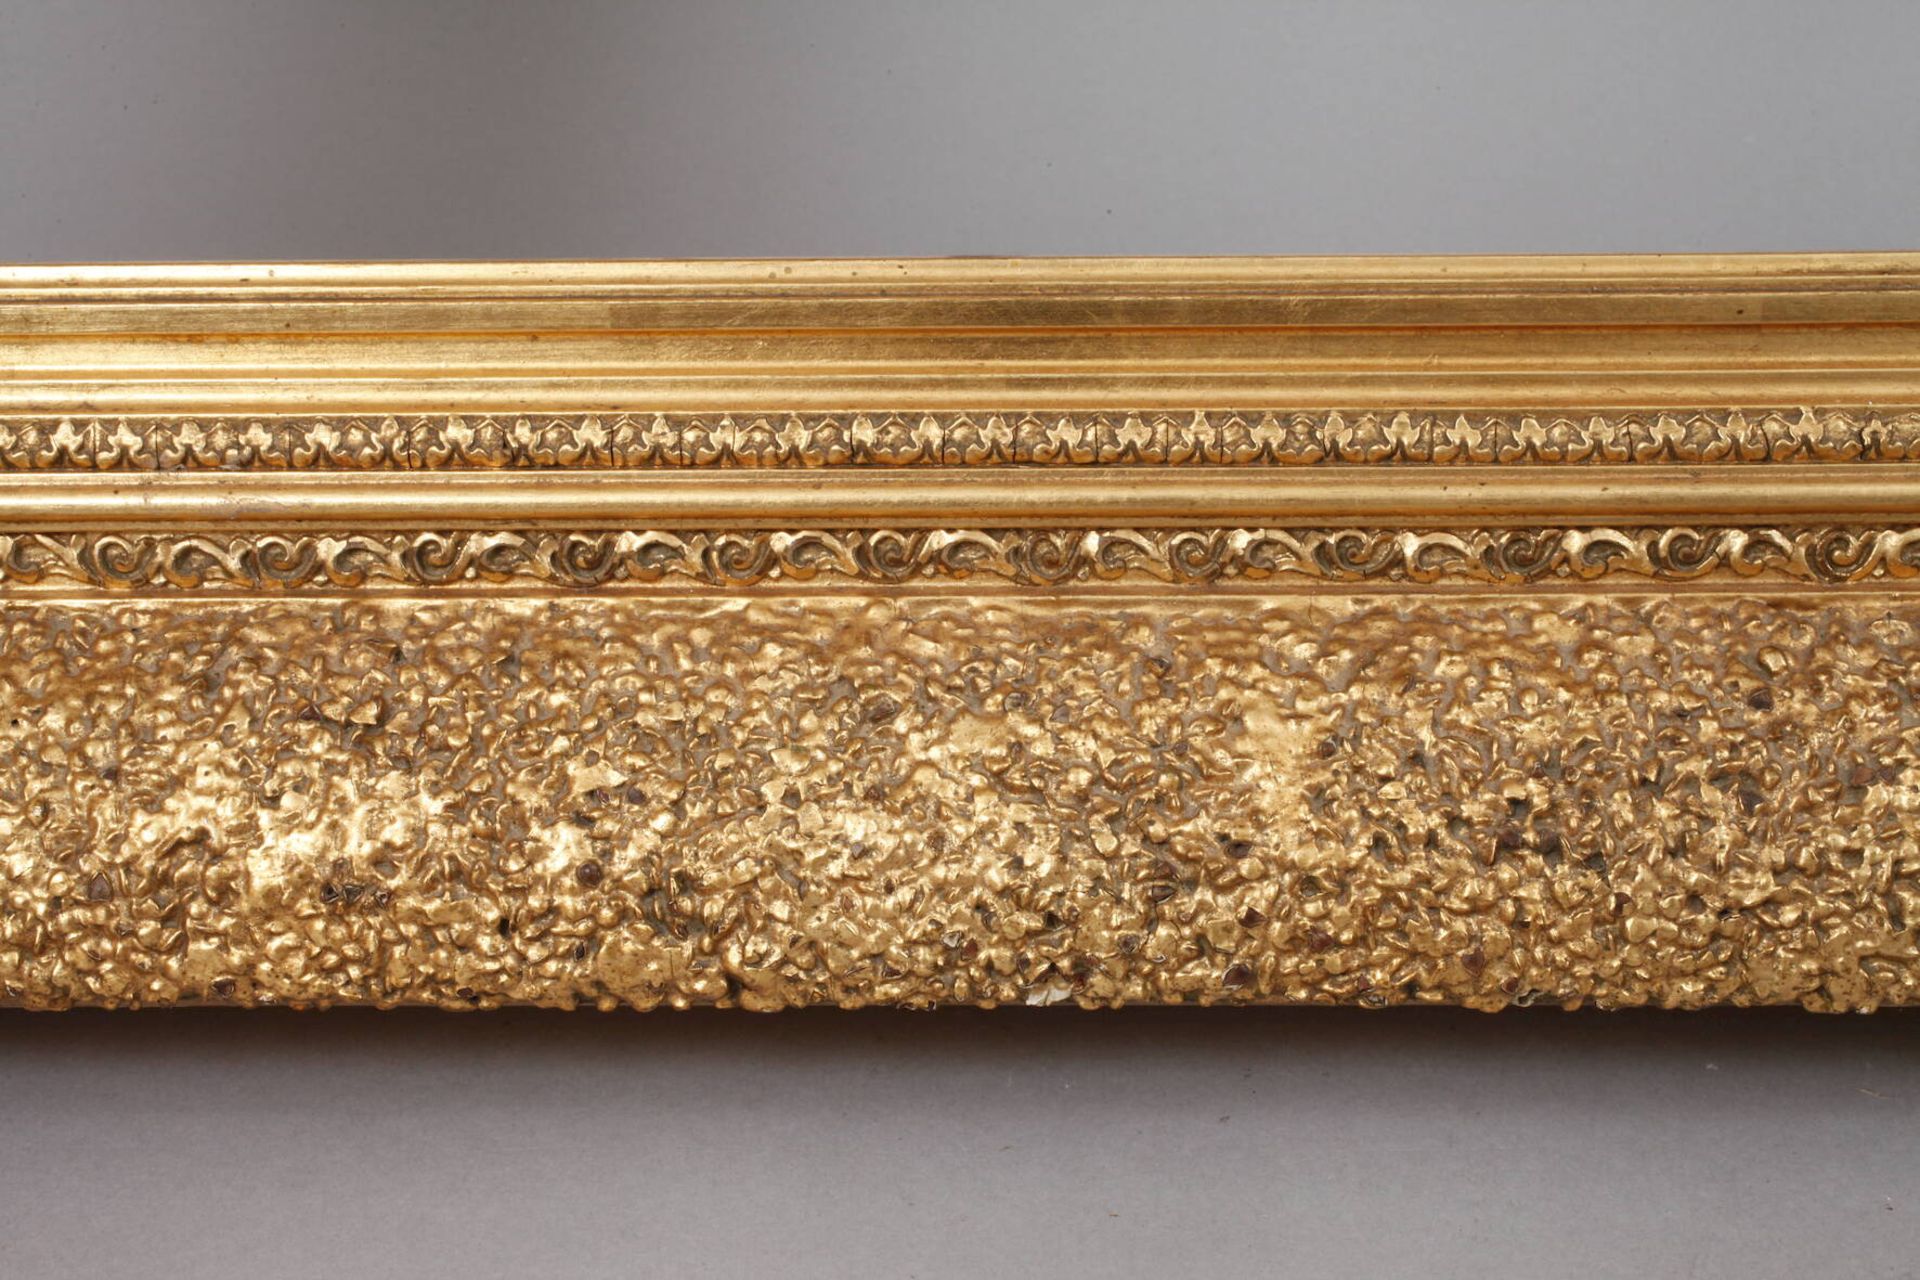 GoldstuckrahmenEnde 19. Jh., Rahmen aus ca. 15 cm breiter, stark steigend profilierter, teils mit - Bild 3 aus 4